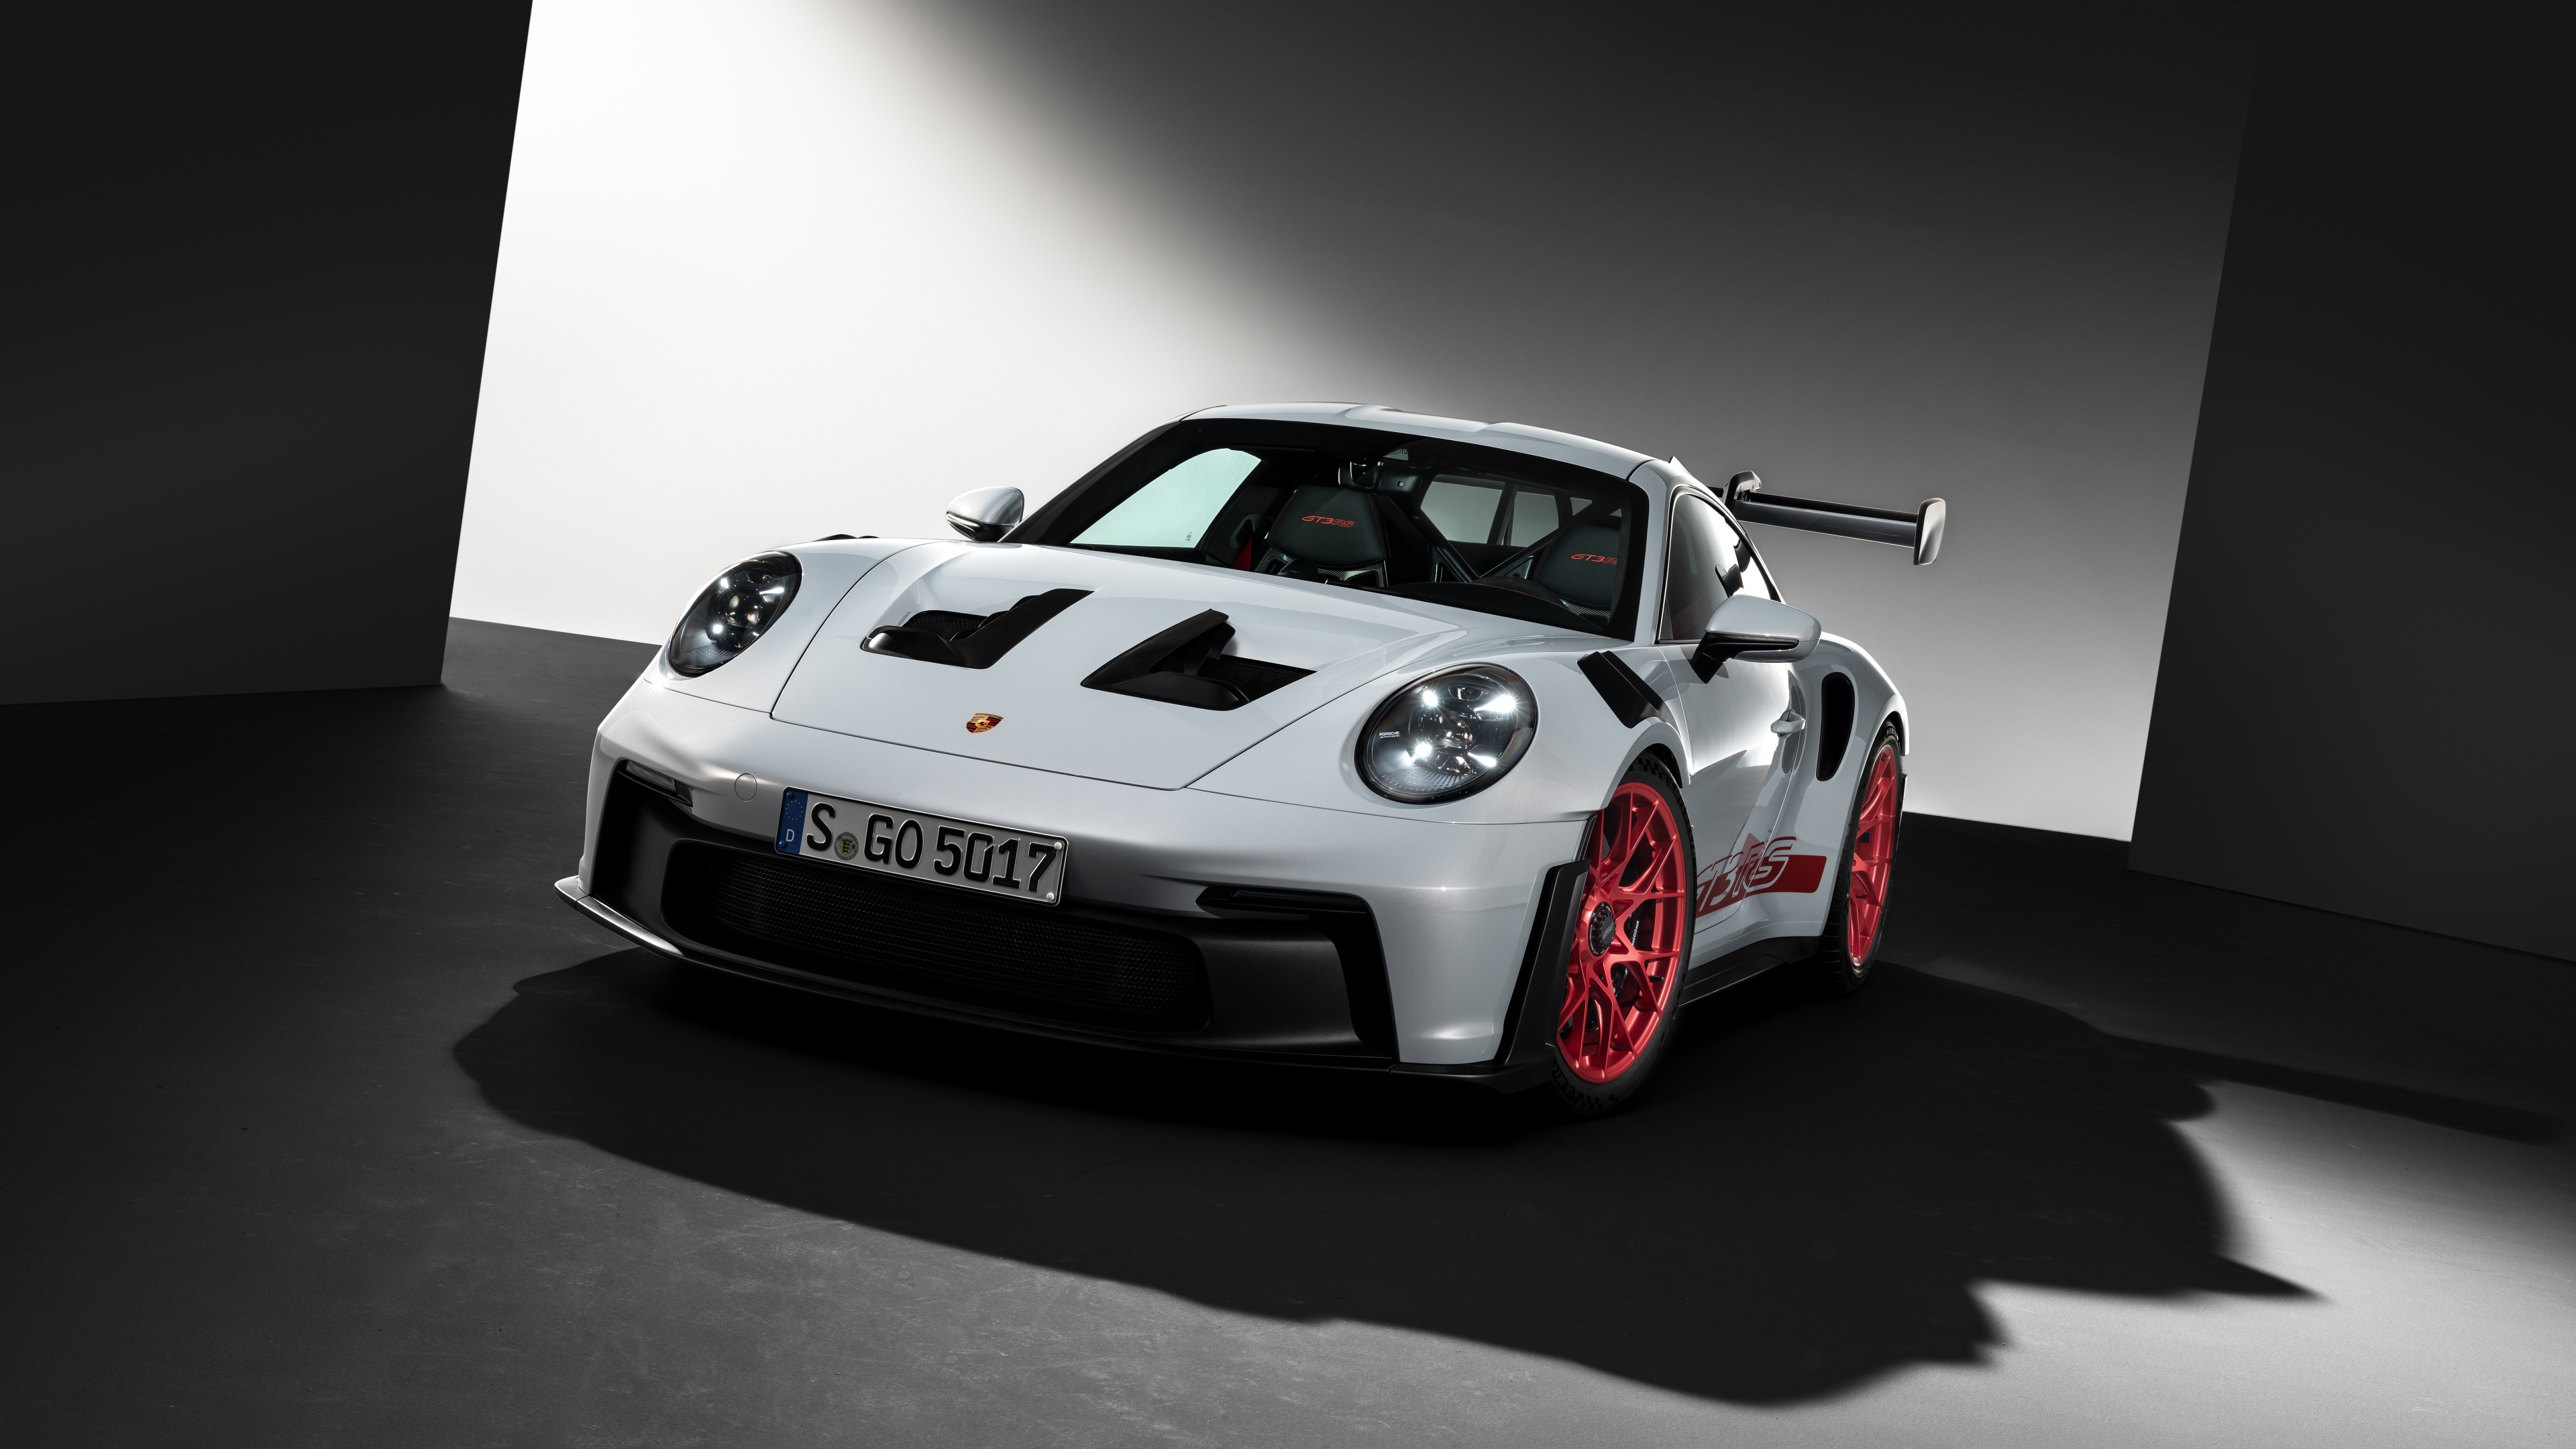 Porsche 911 GT3 RS Wallpaper 4K, 2022, 5K, 8K, Cars, #8858